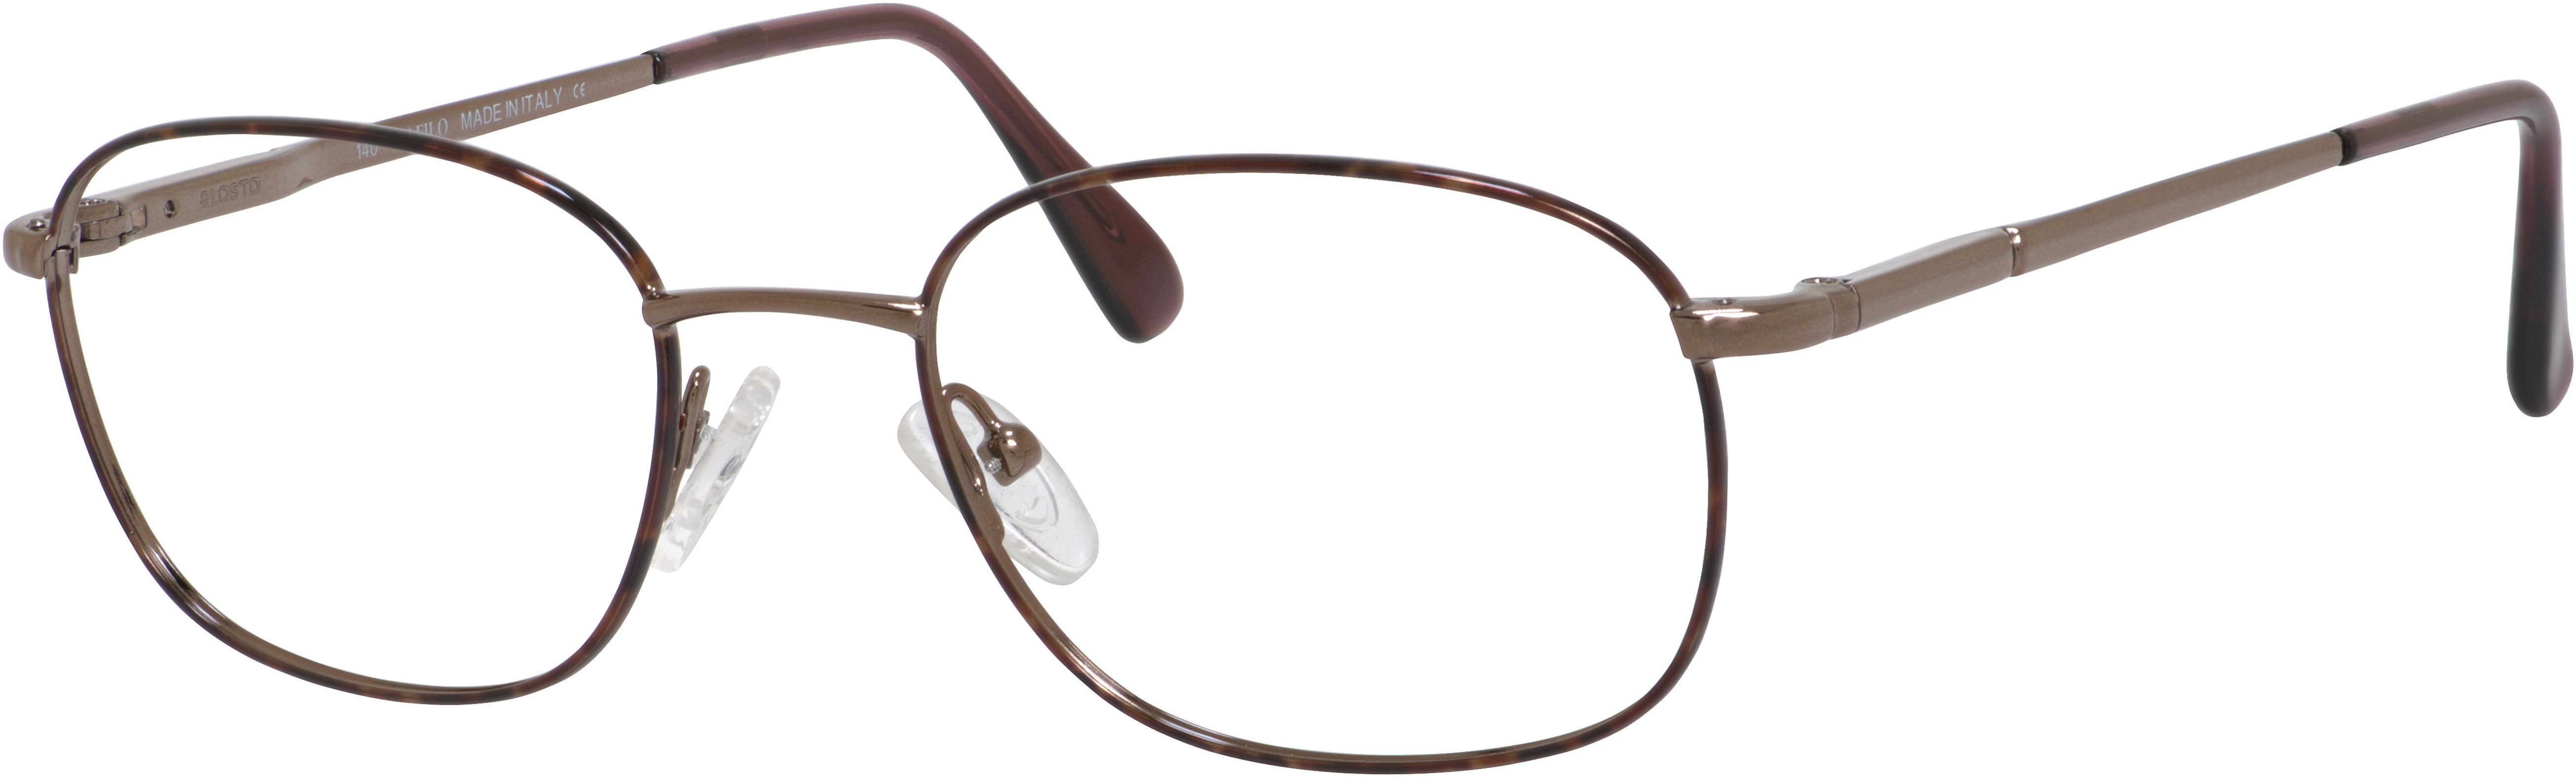  Elasta 7057 Rectangular Eyeglasses 0R69-0R69  Havana Copper (00 Demo Lens)